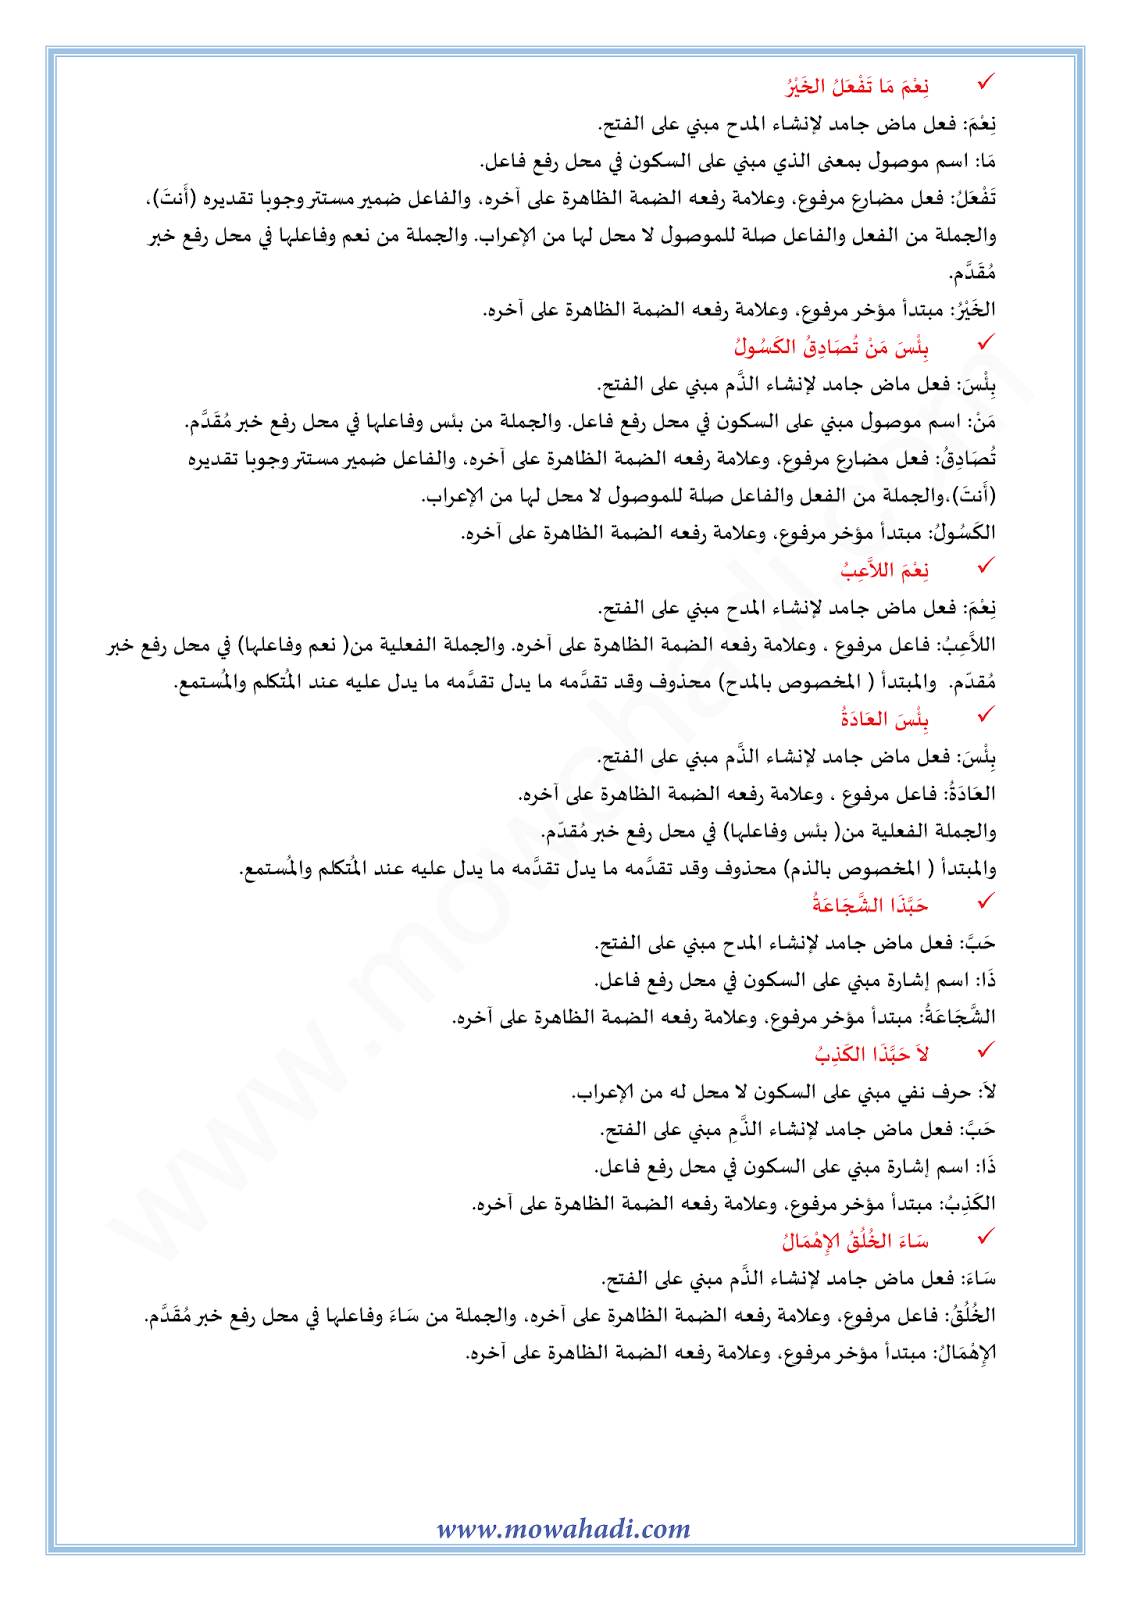 الدرس اللغوي أسلوب المدح و الذم للسنة الثالثة اعدادي في مادة اللغة العربية 10-cours-dars-loghawi3_003